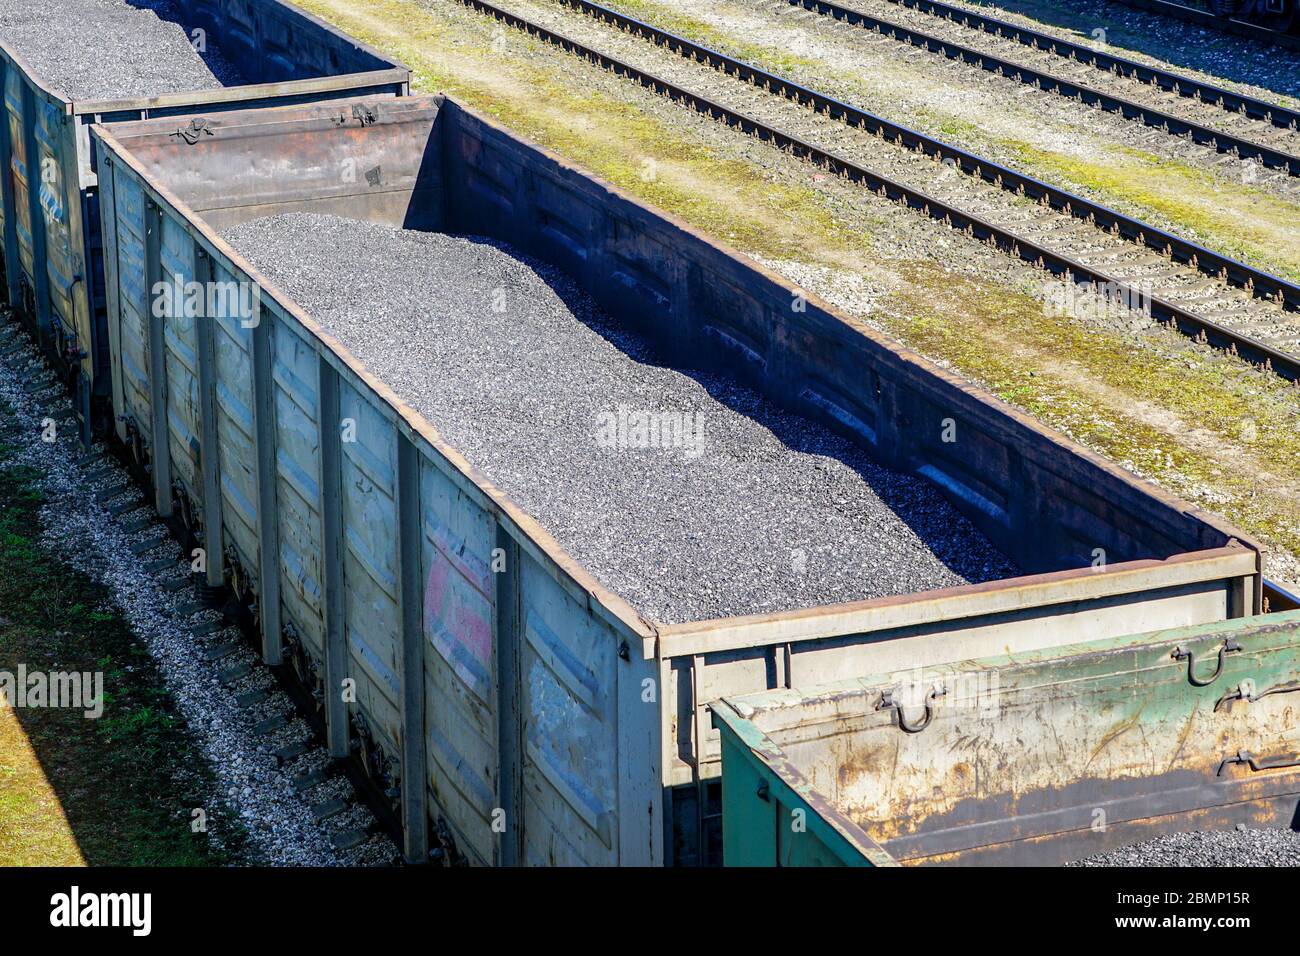 vue de dessus des wagons chargés de charbon Banque D'Images